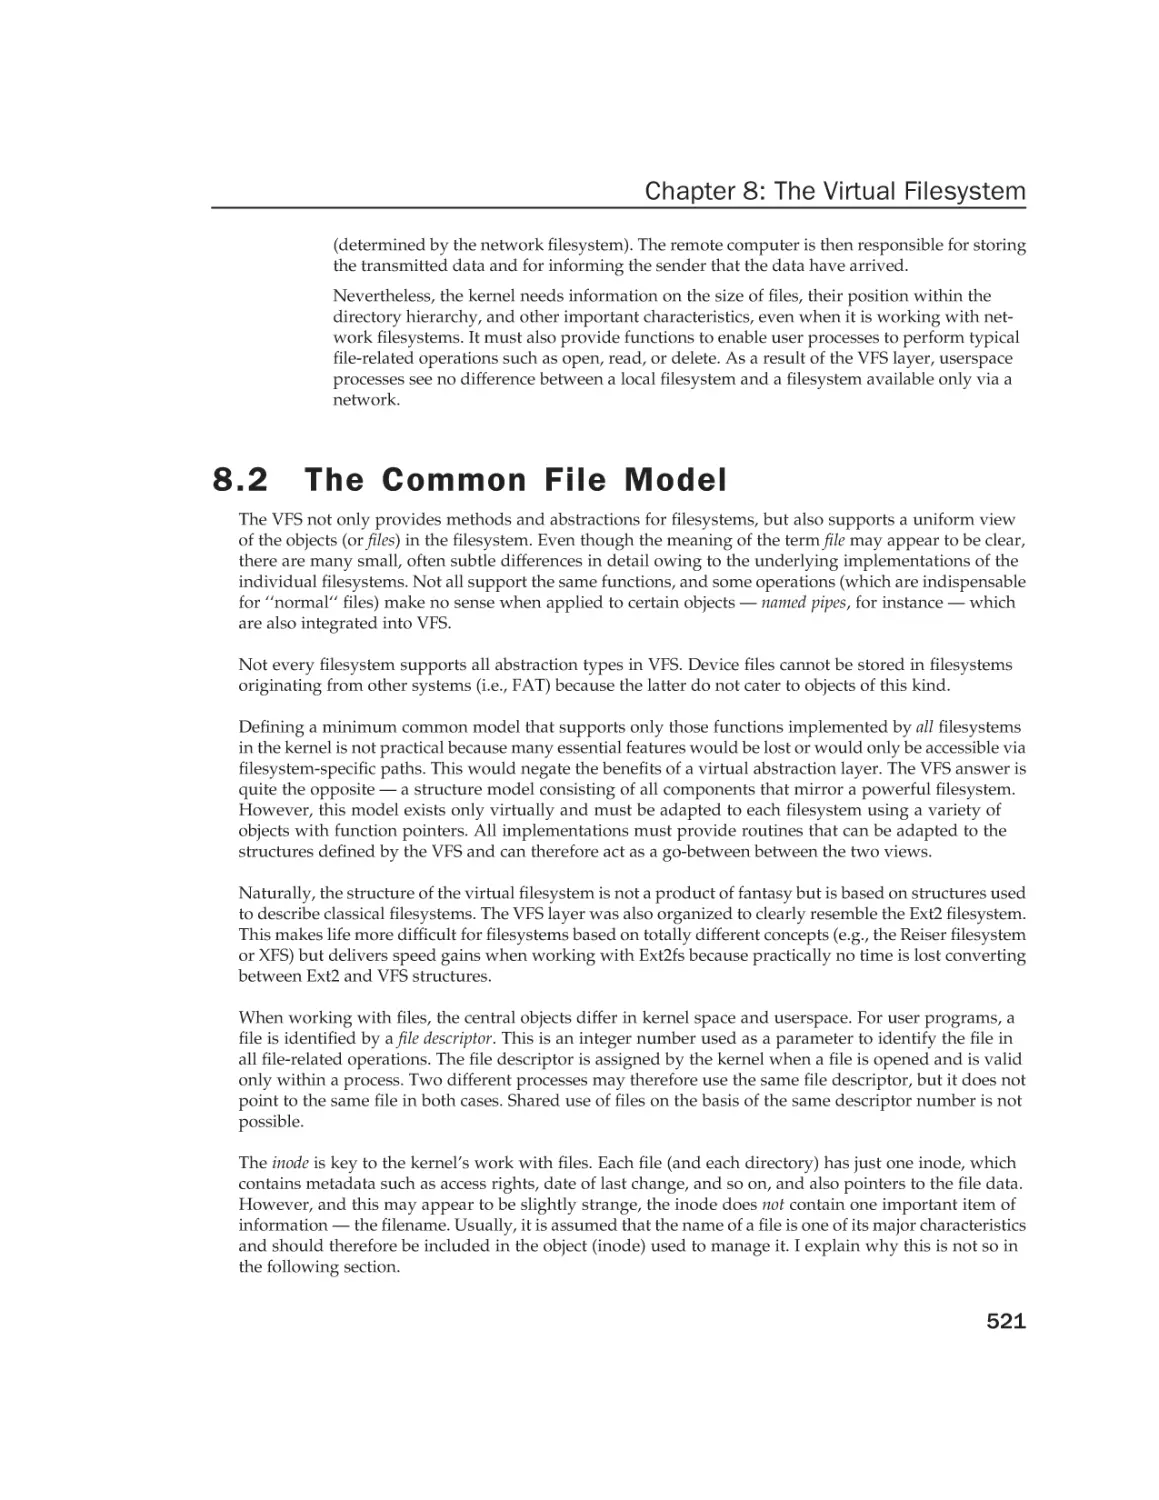 8.2 The Common File Model